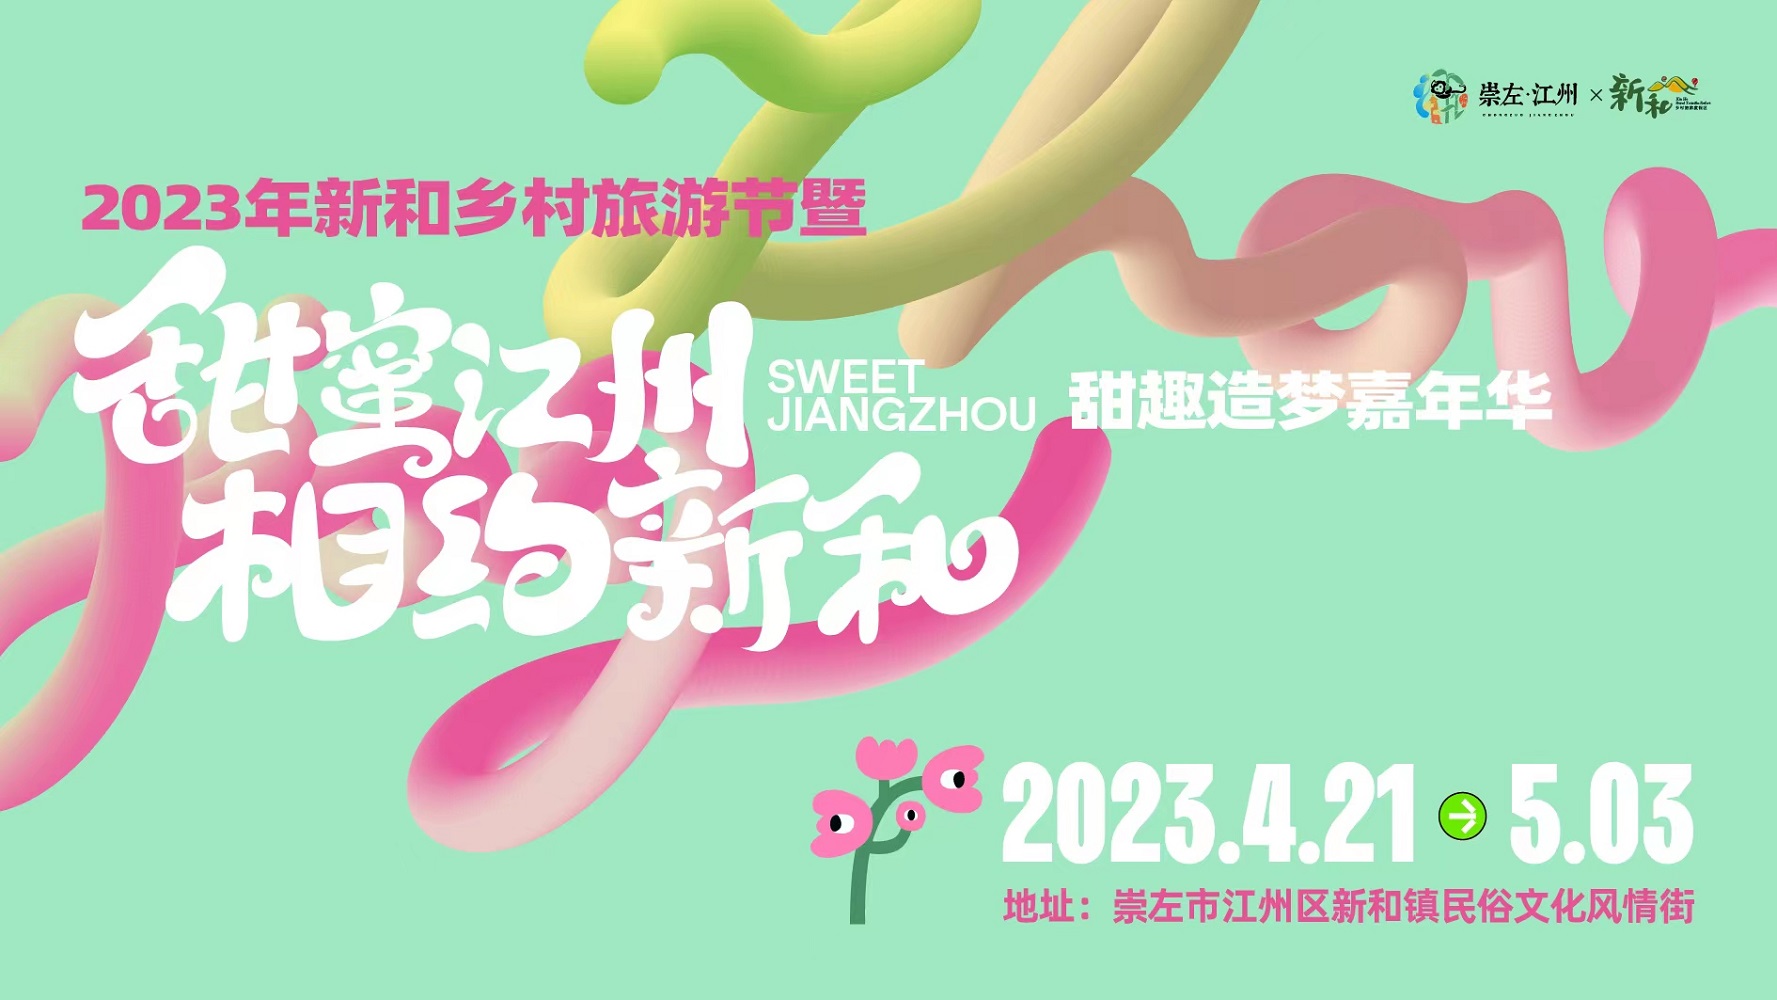 江州区举办2023年新和乡村旅游节暨 “甜蜜江州·相约新和”甜趣造梦嘉年华活动